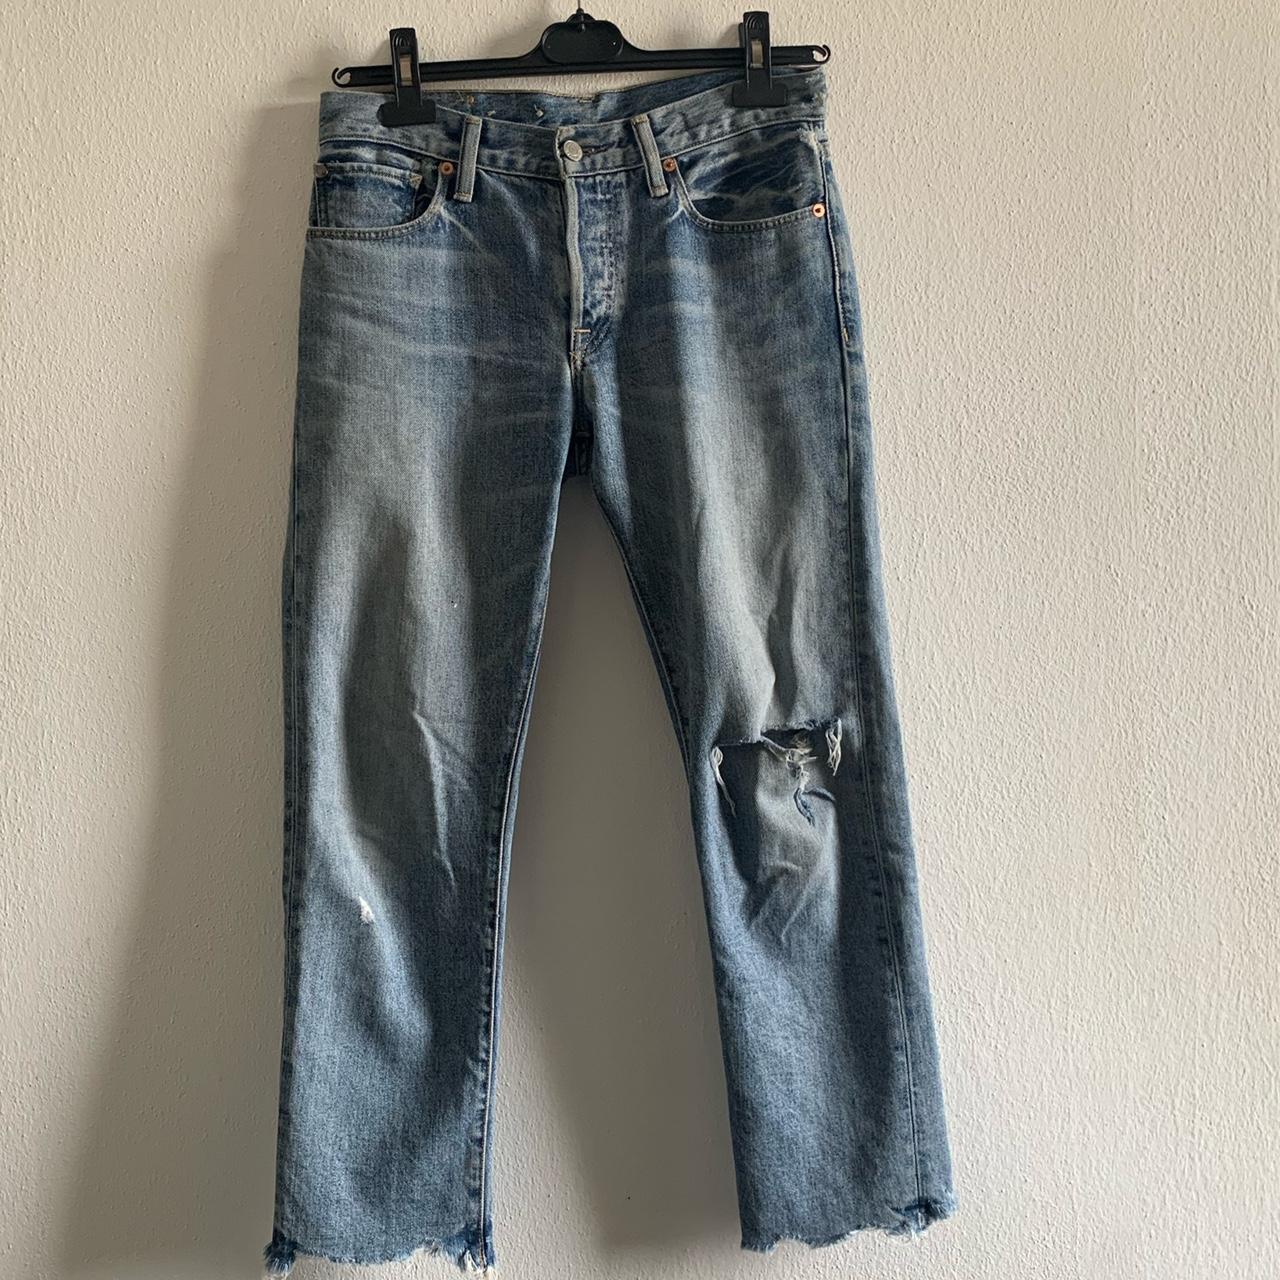 Ralph Laurent / Denim & Supply jeans . Perfect fit... - Depop